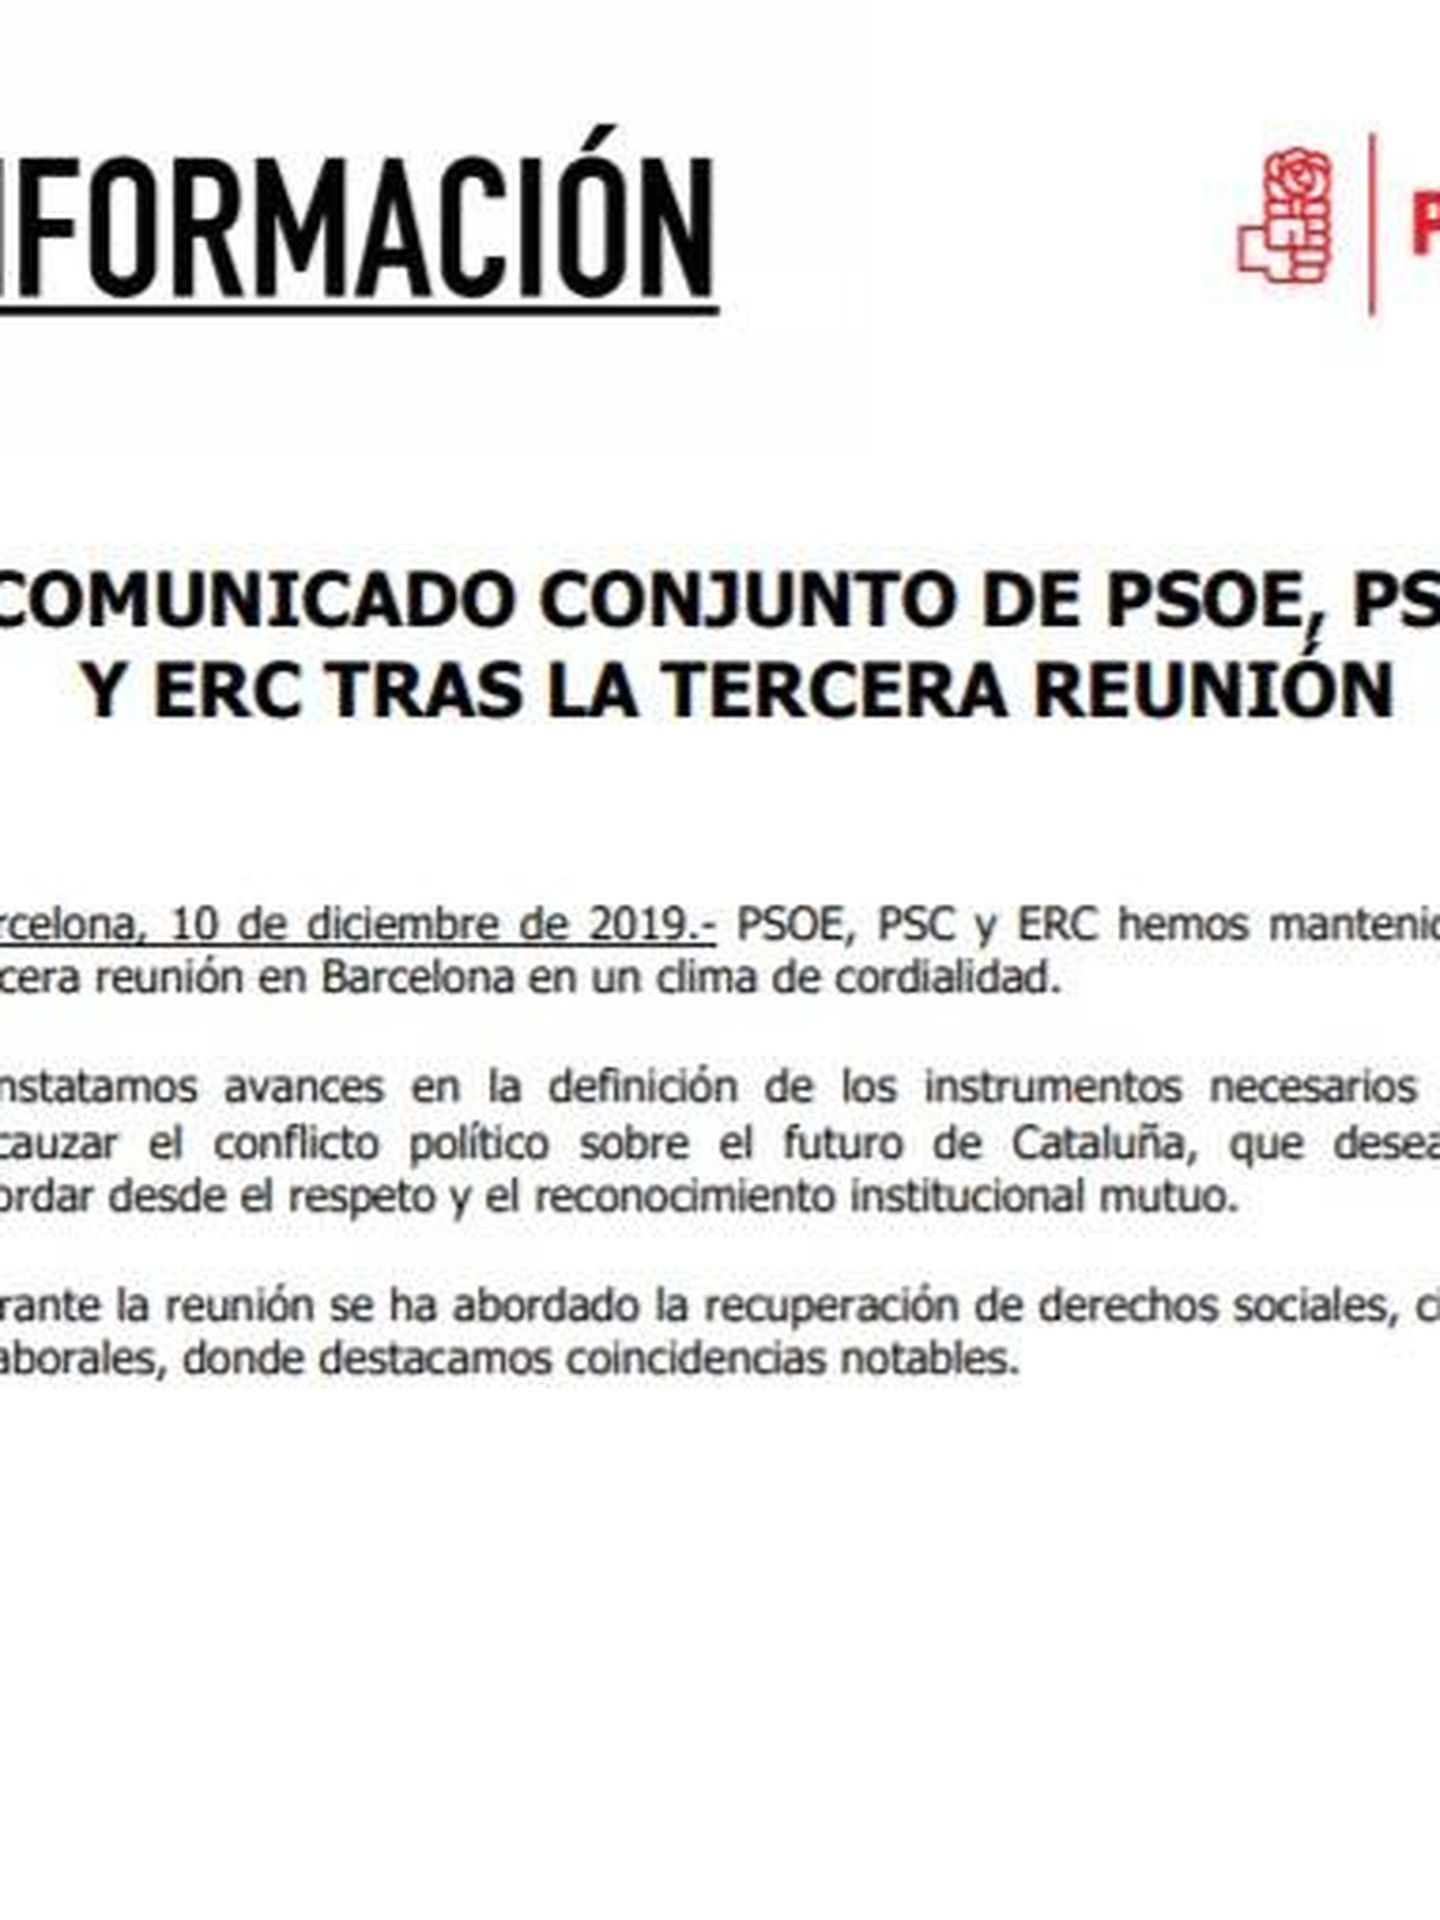 Consulte aquí en PDF el comunicado conjunto de PSOE-PSC y ERC tras su tercera reunión oficial. 